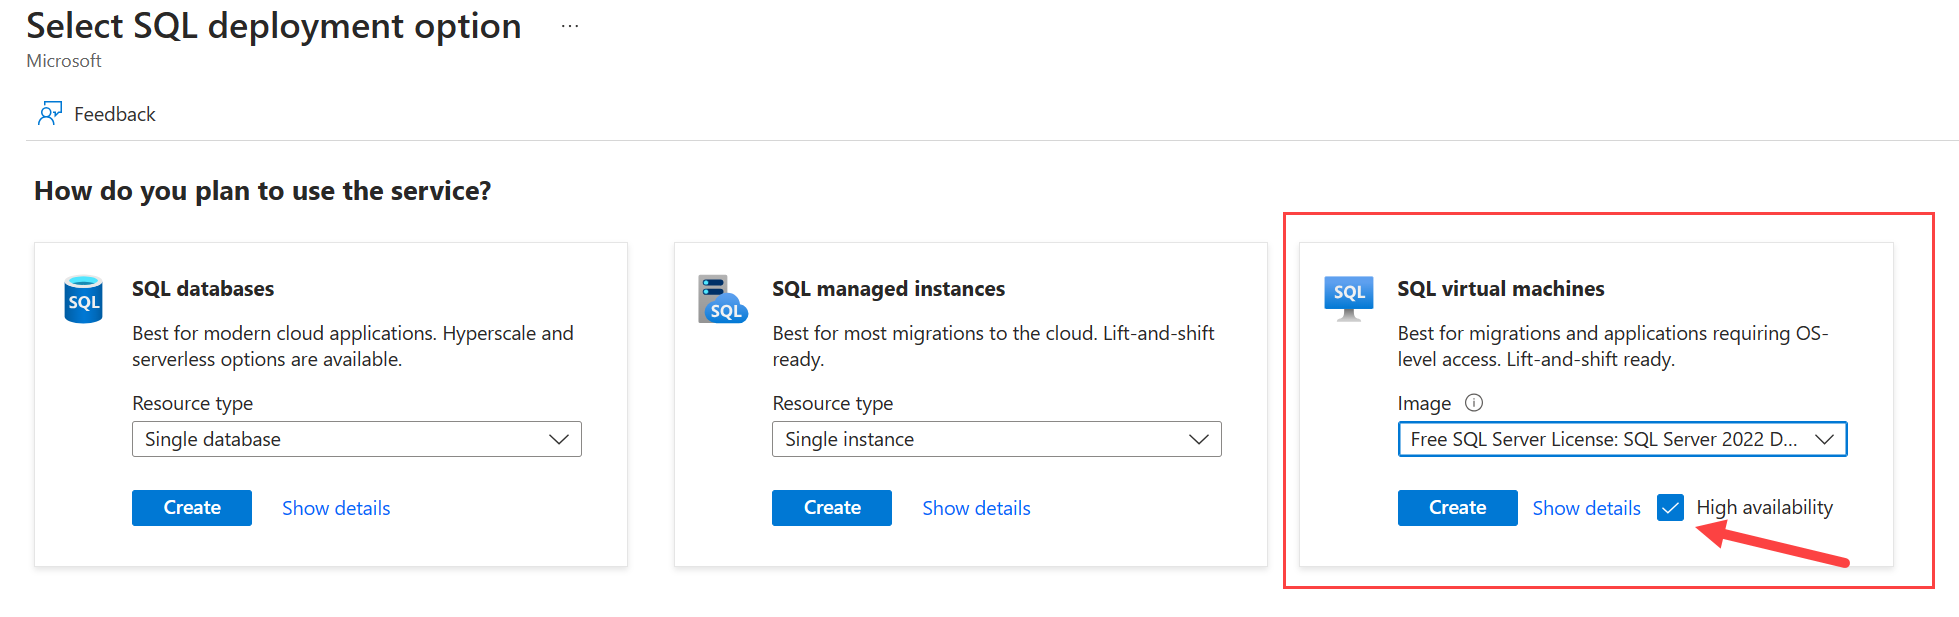 Capture d’écran du portail Azure montrant la page de sélection d’une option de déploiement SQL Server, avec la haute disponibilité sélectionnée.